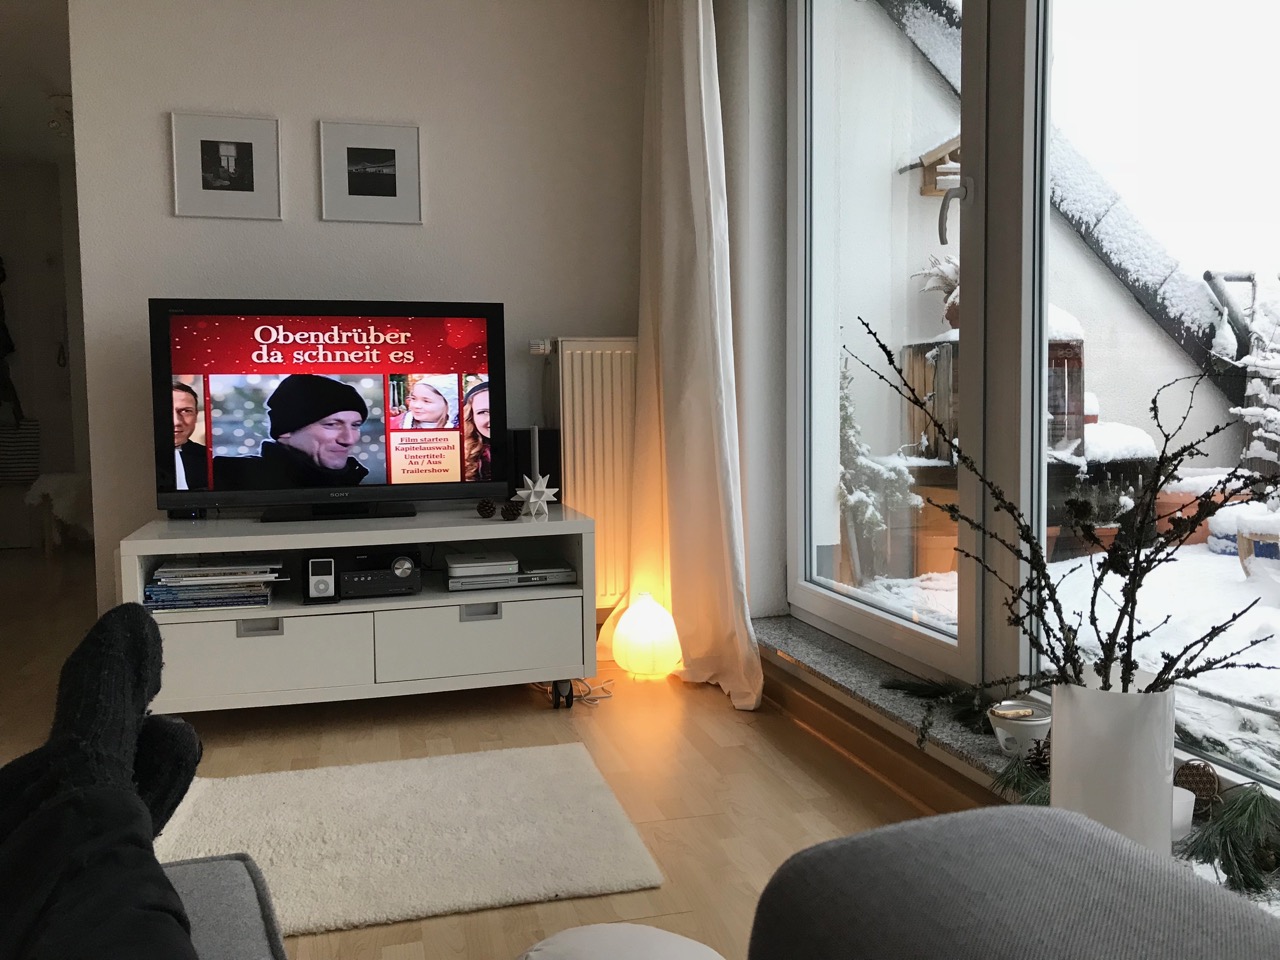 Blick auf den TV mit dem Film "Obendrüber das schneit es" und Blick auf die verschneite Terrasse